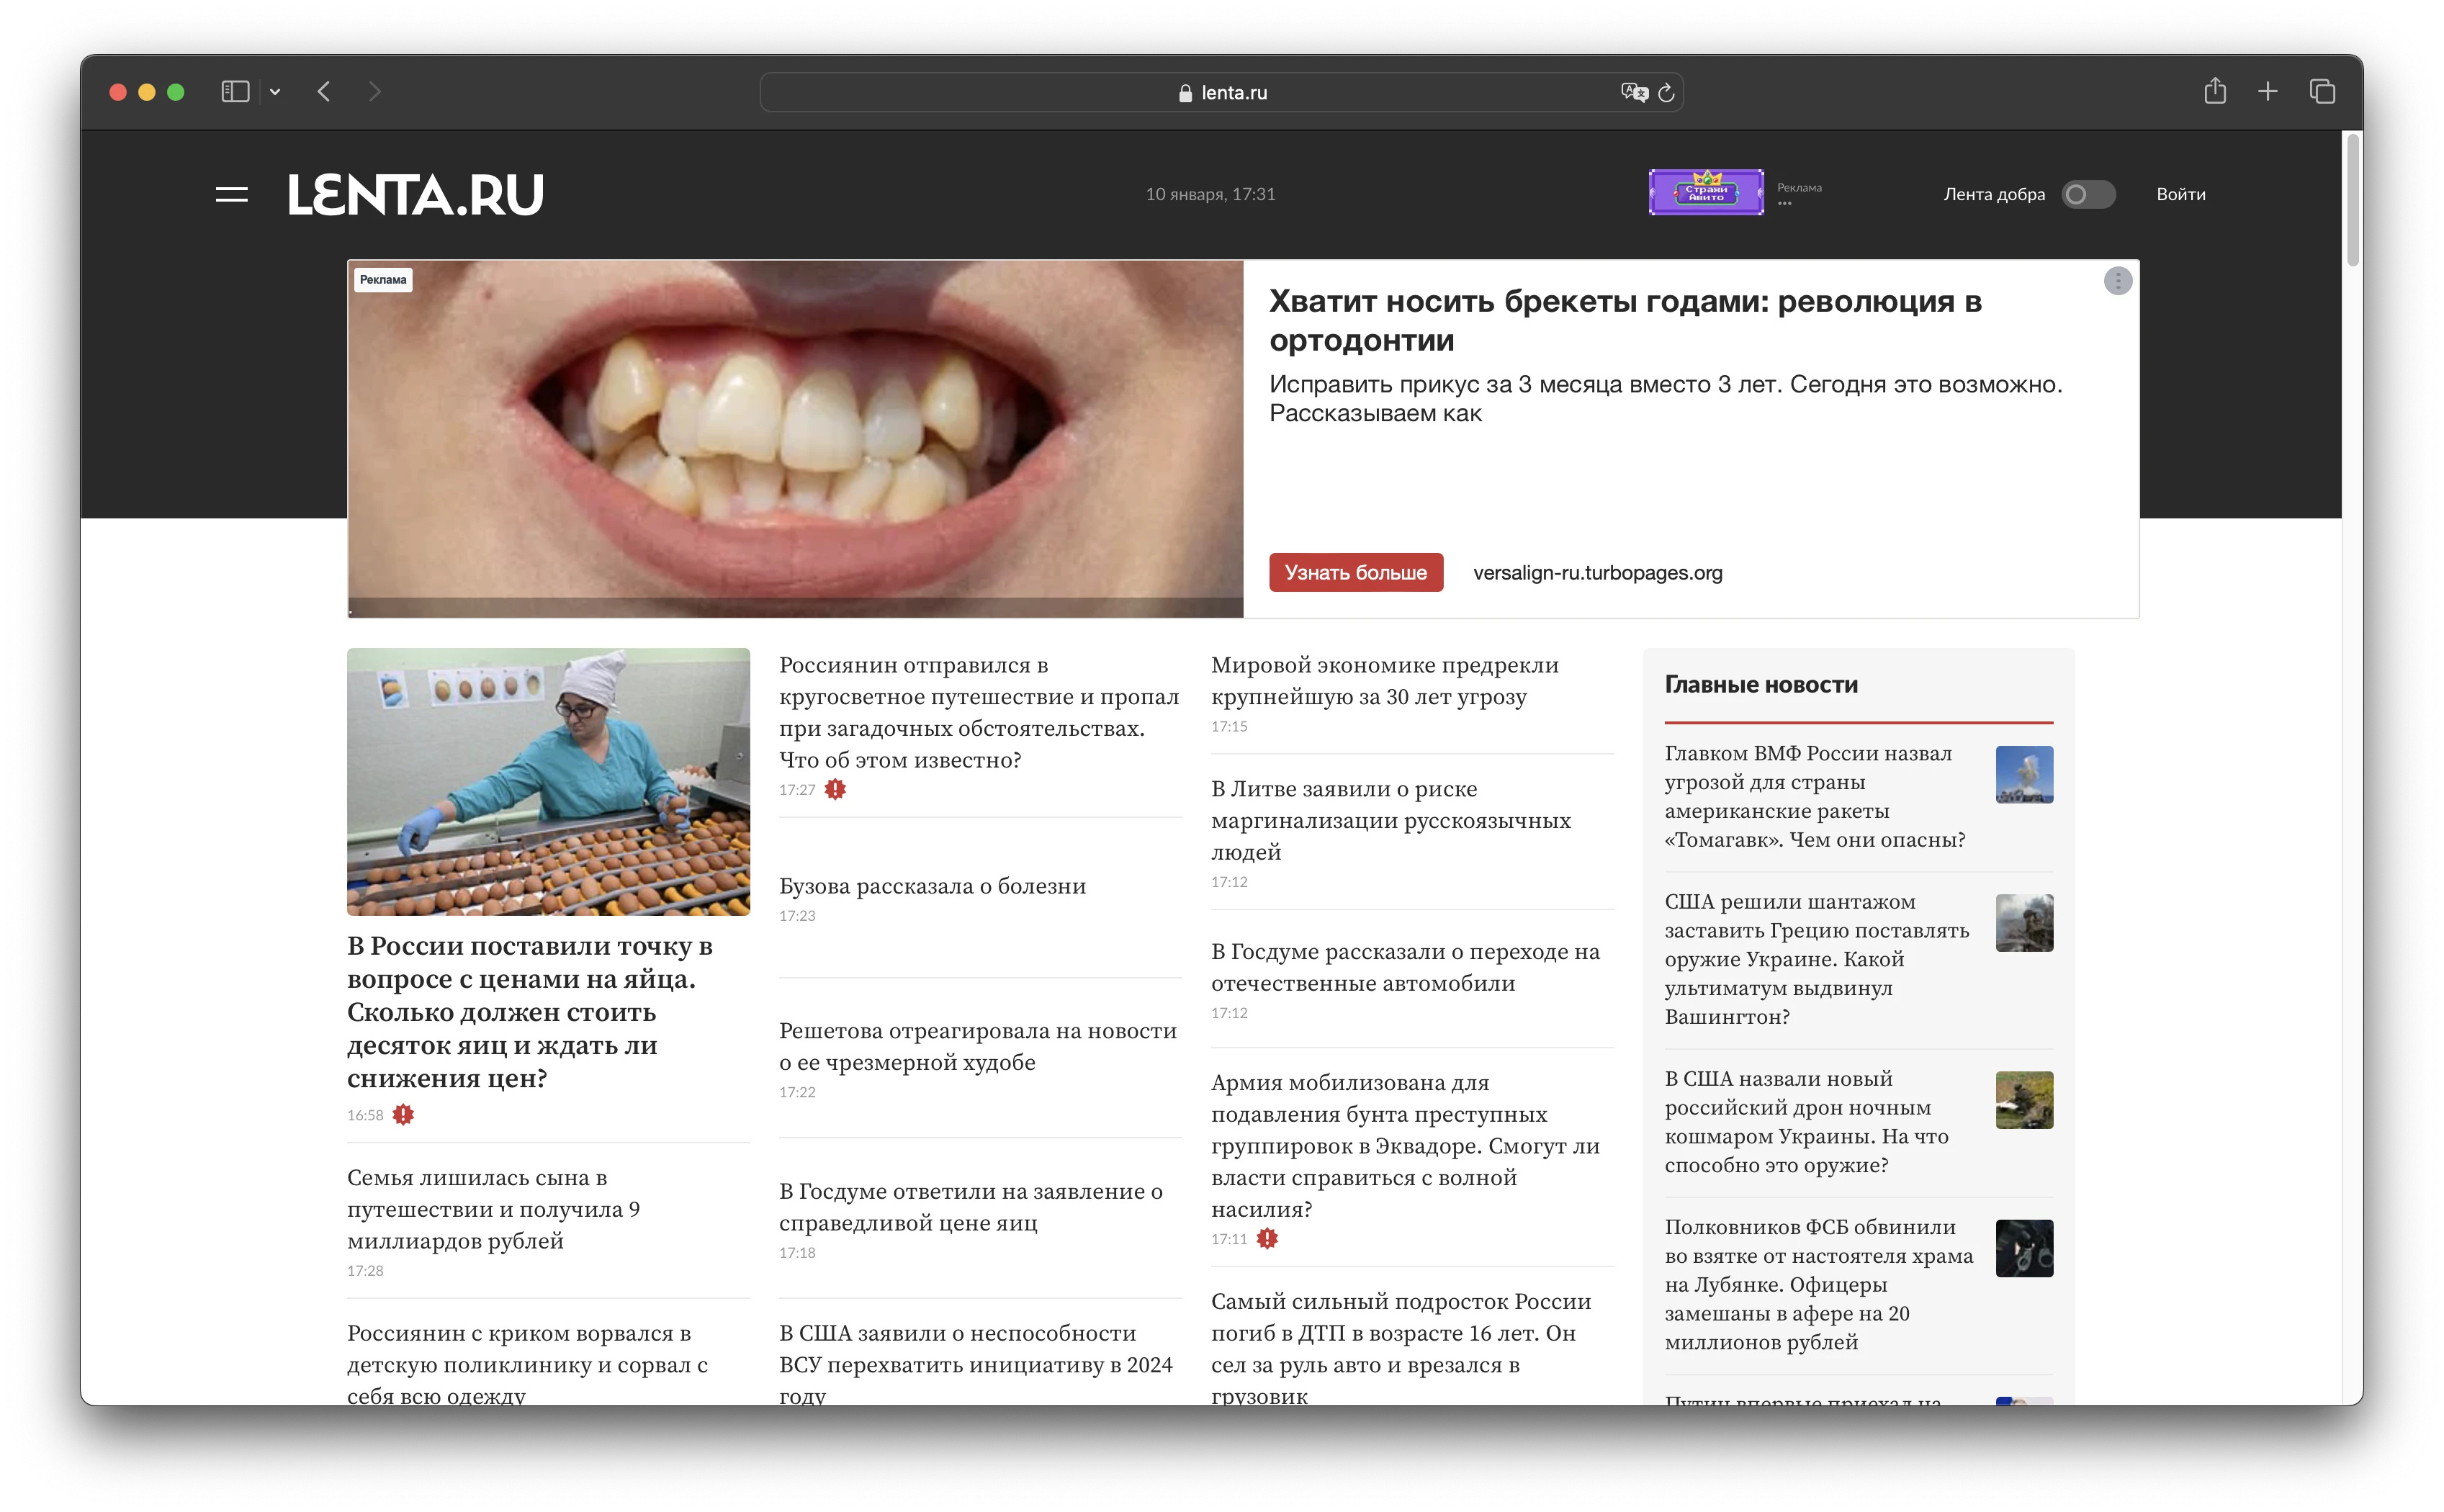 Lenta.ru - Новости России и мира сегодня